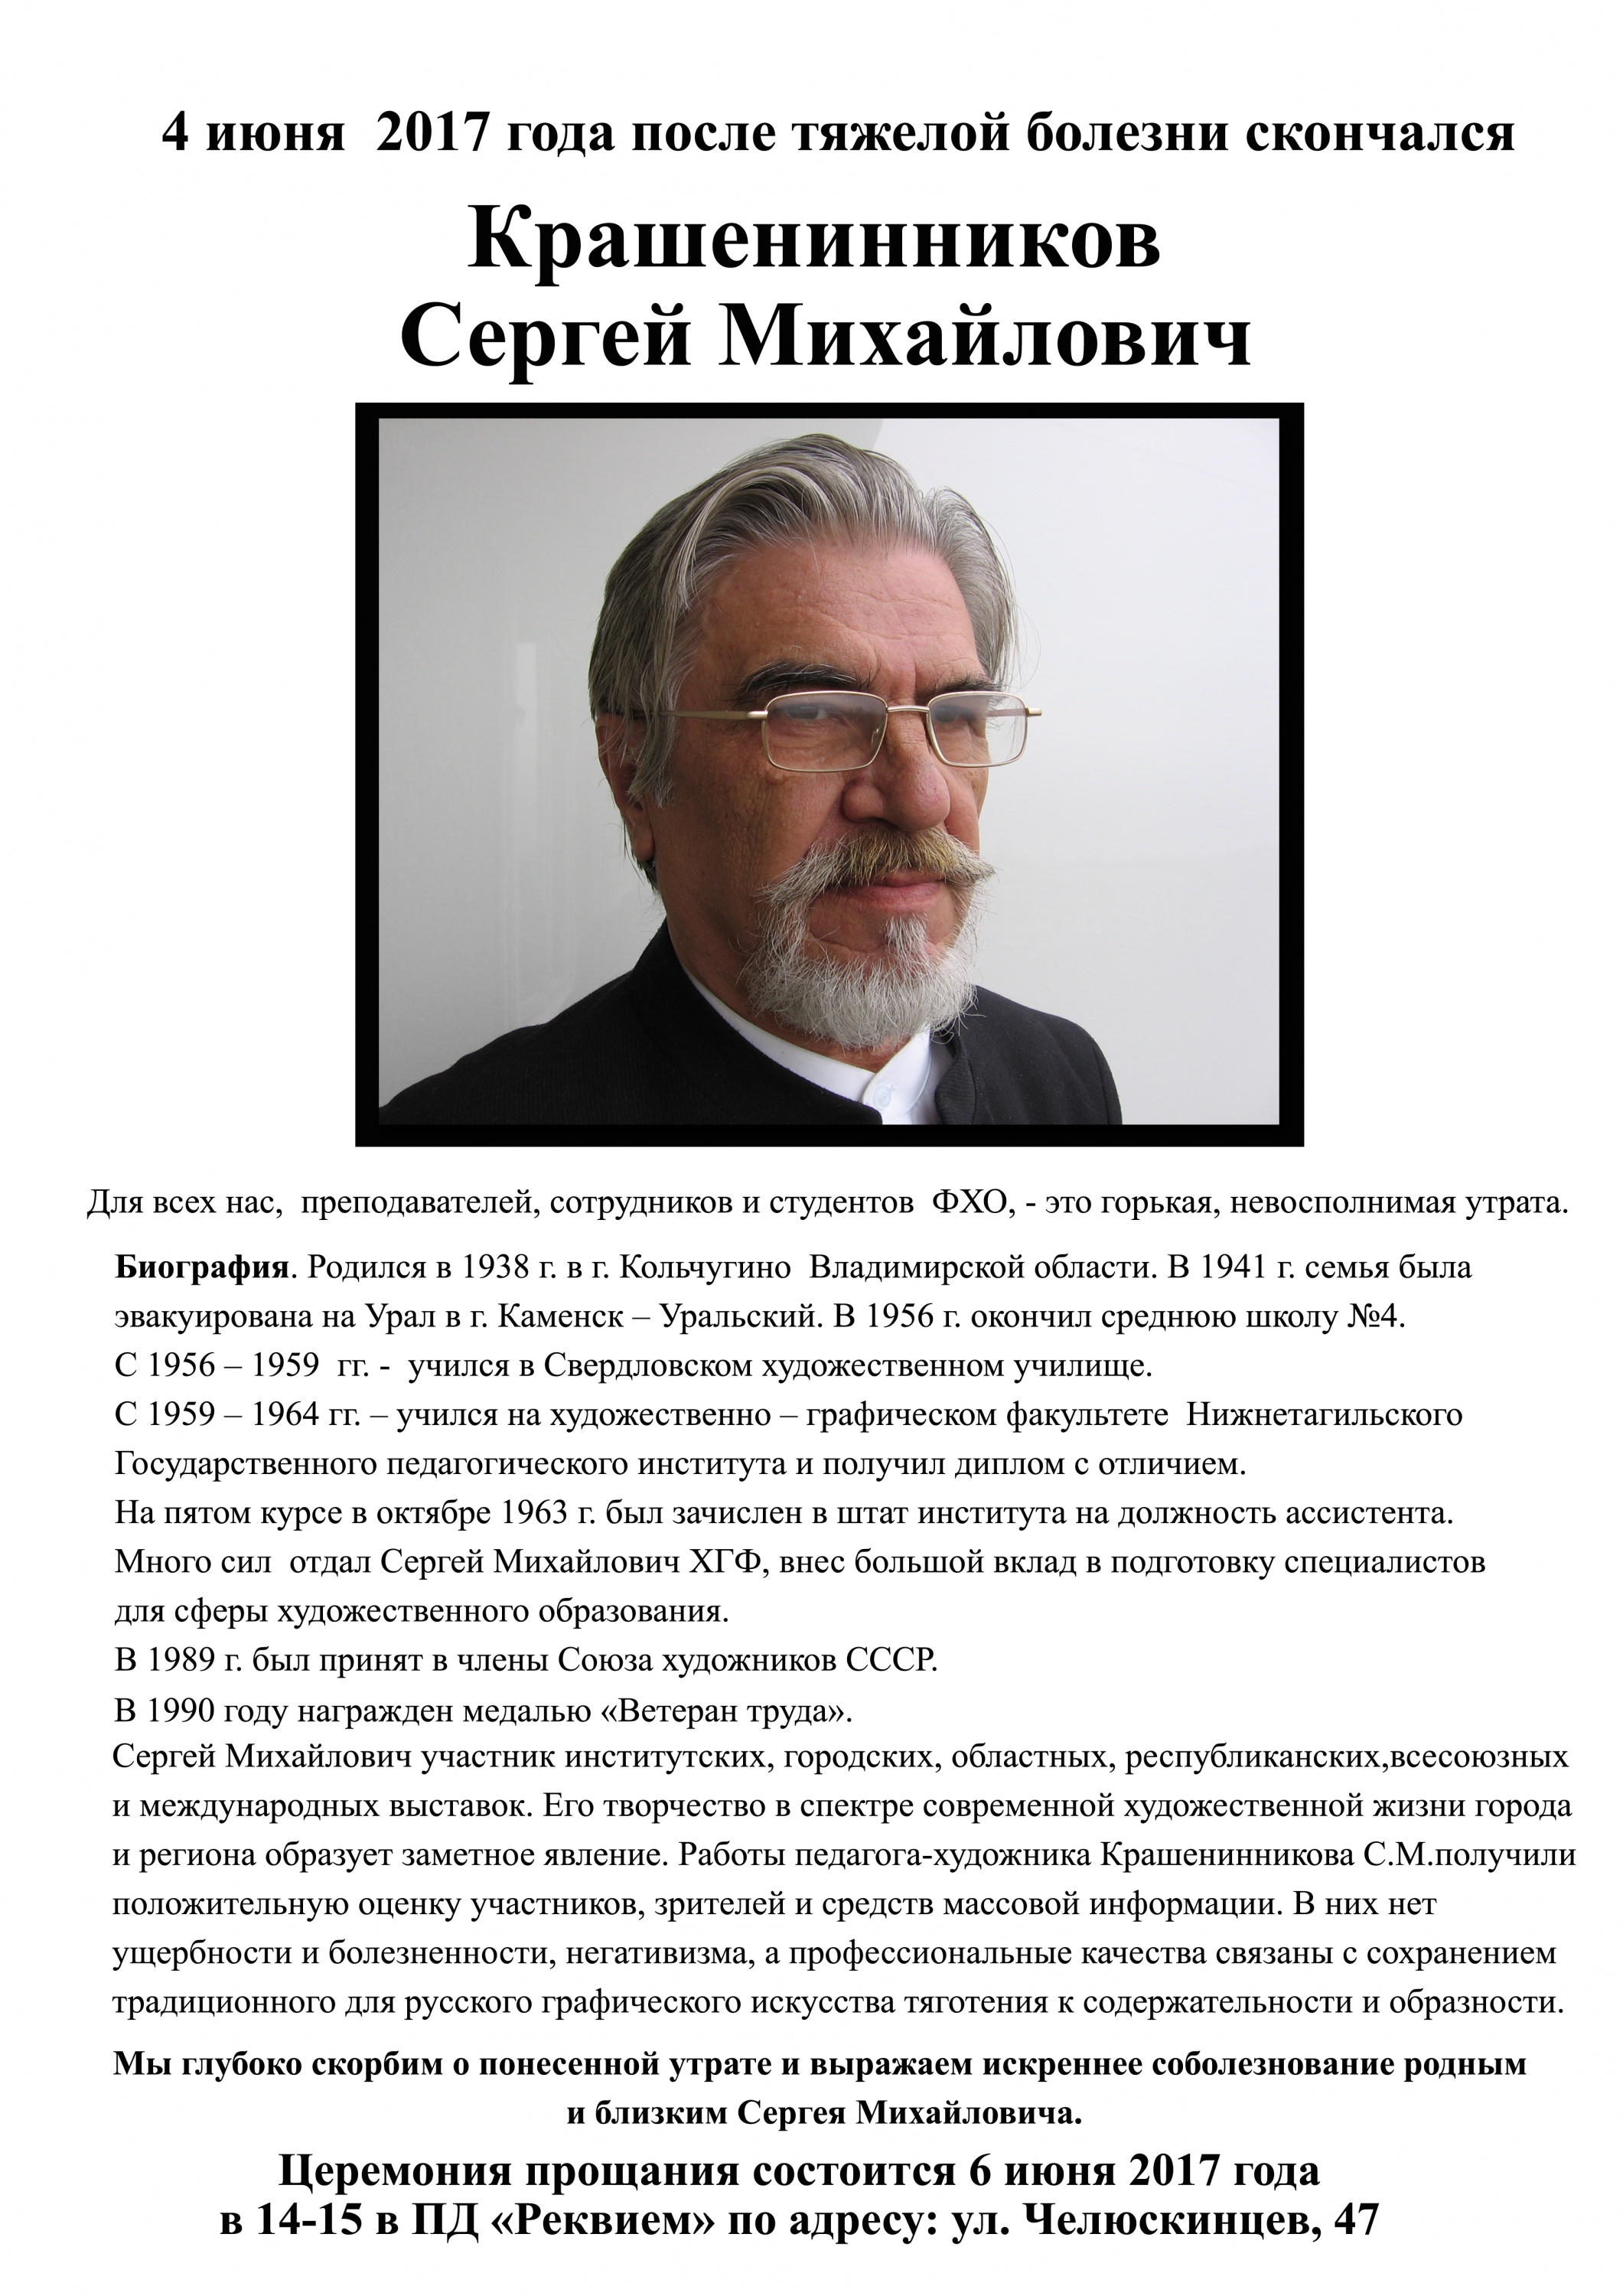 Сергей Михайлович печать.jpg